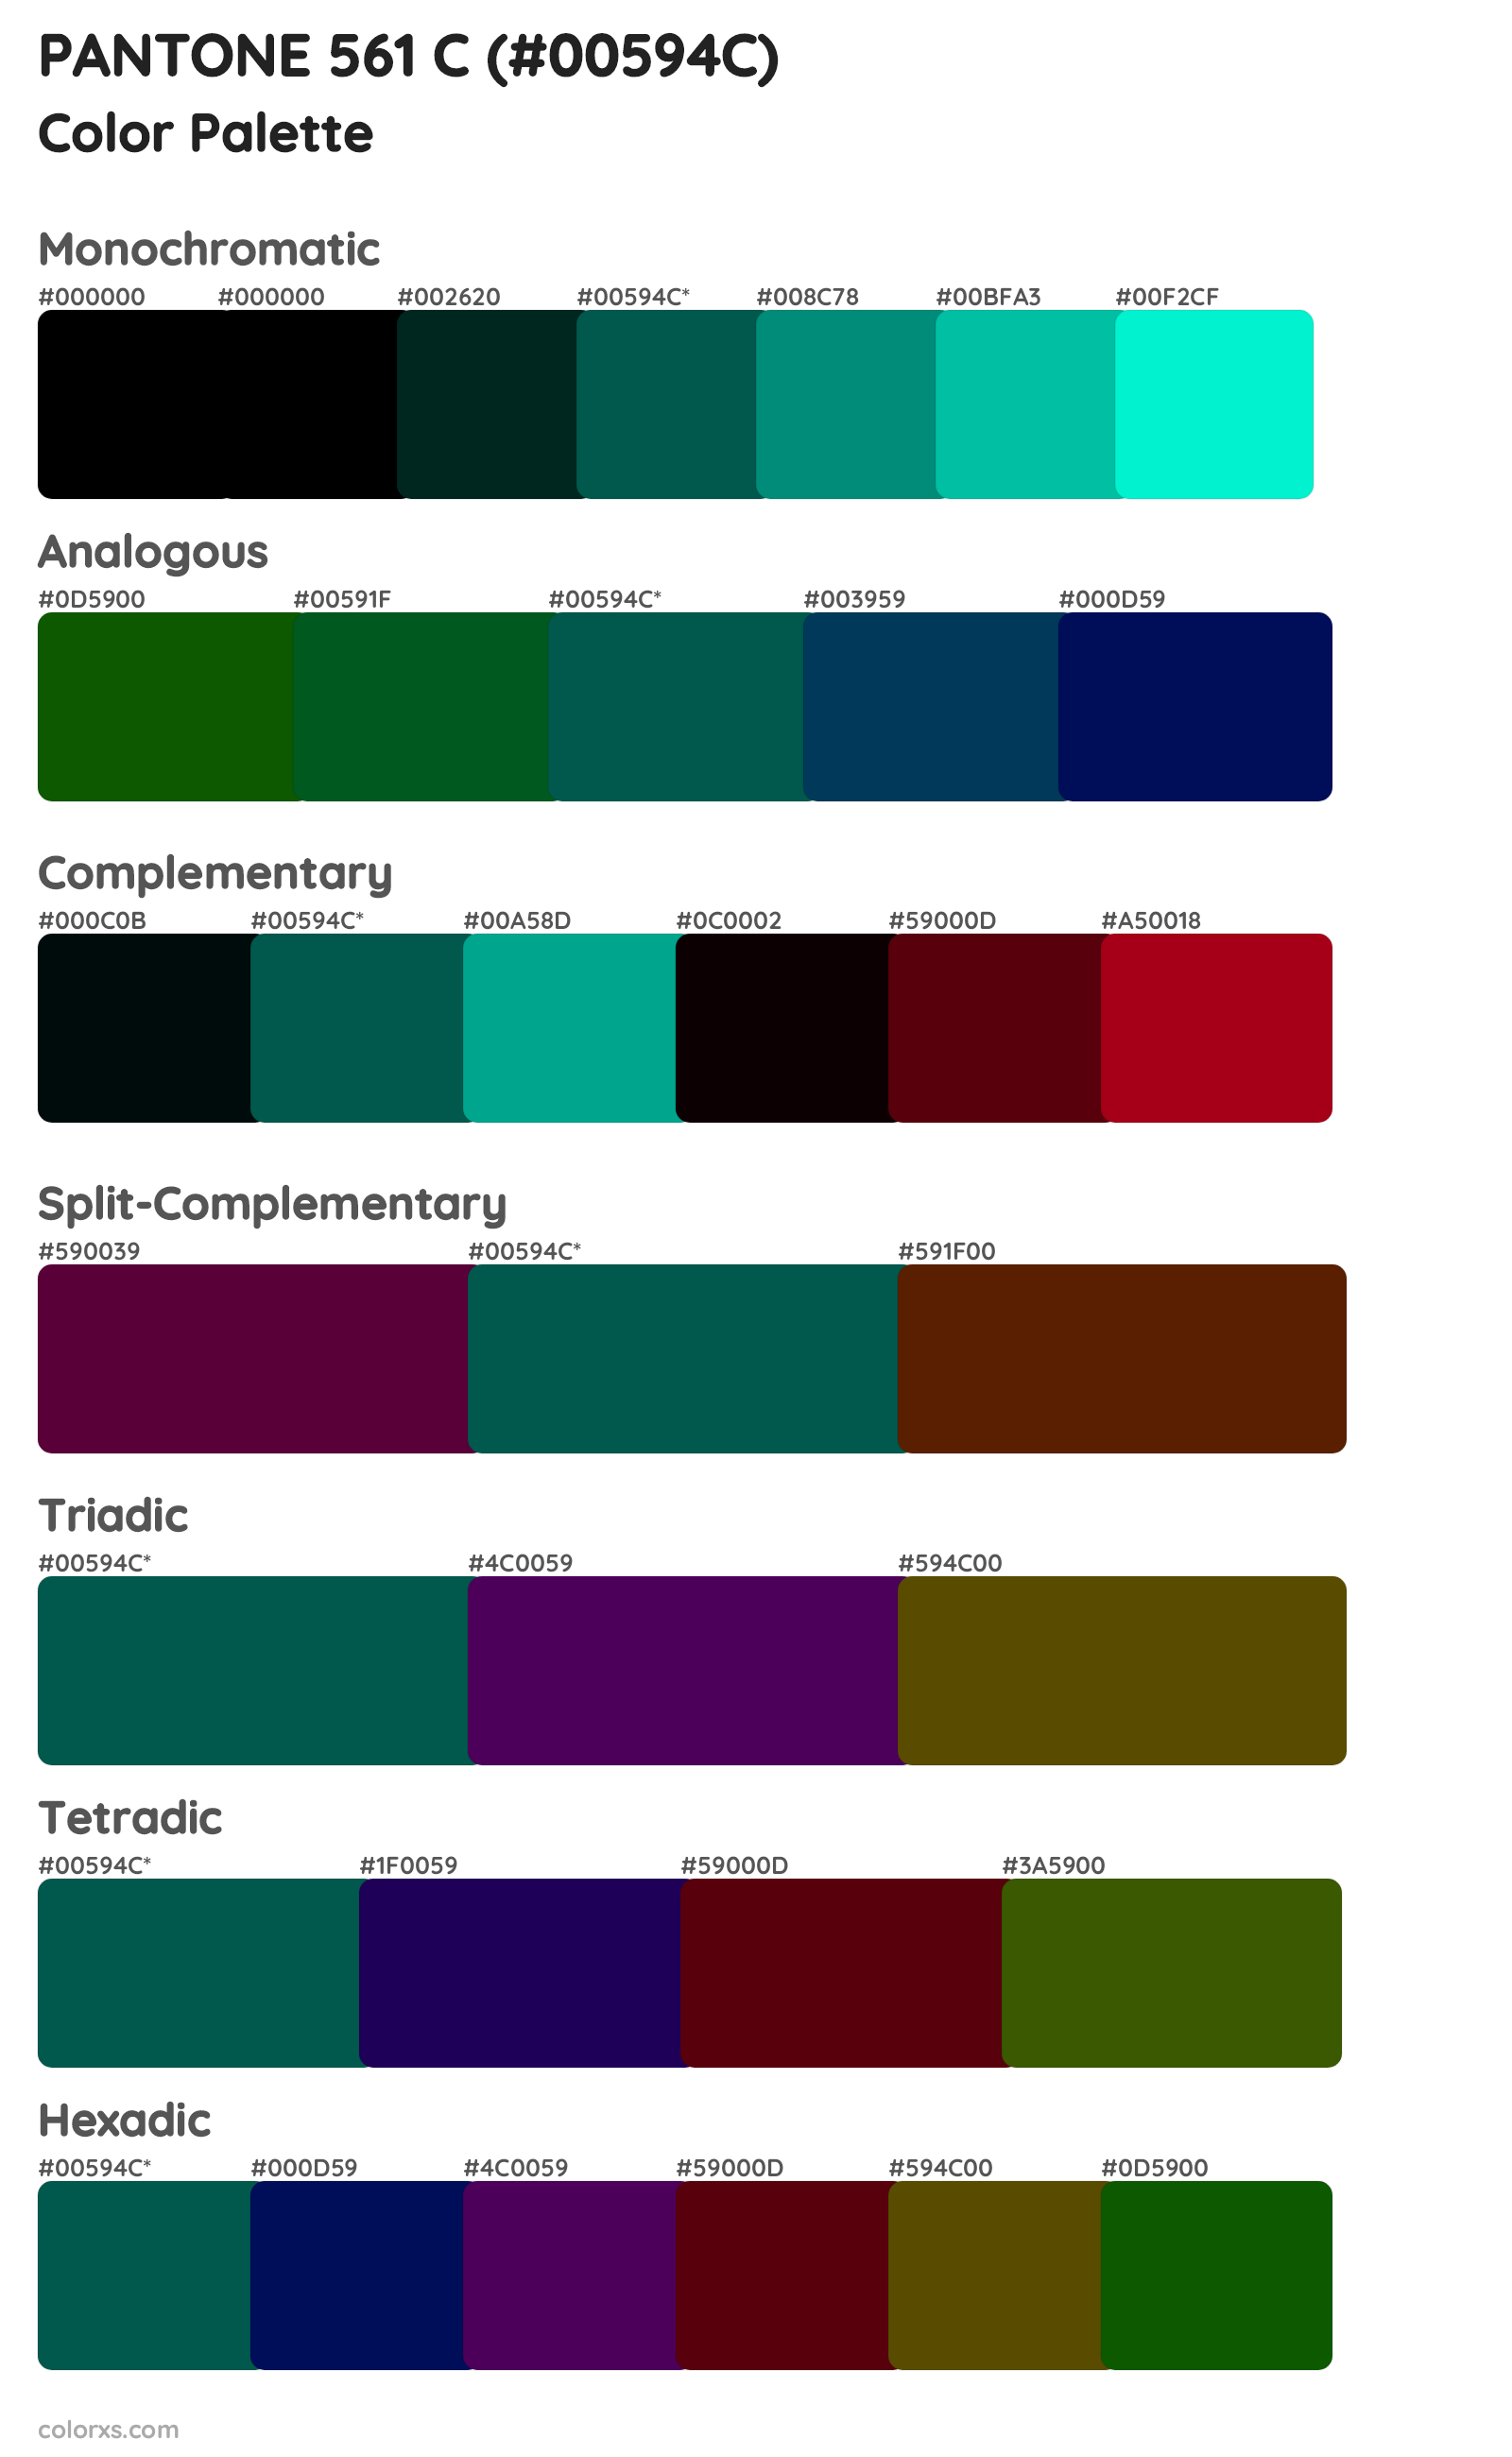 PANTONE 561 C Color Scheme Palettes